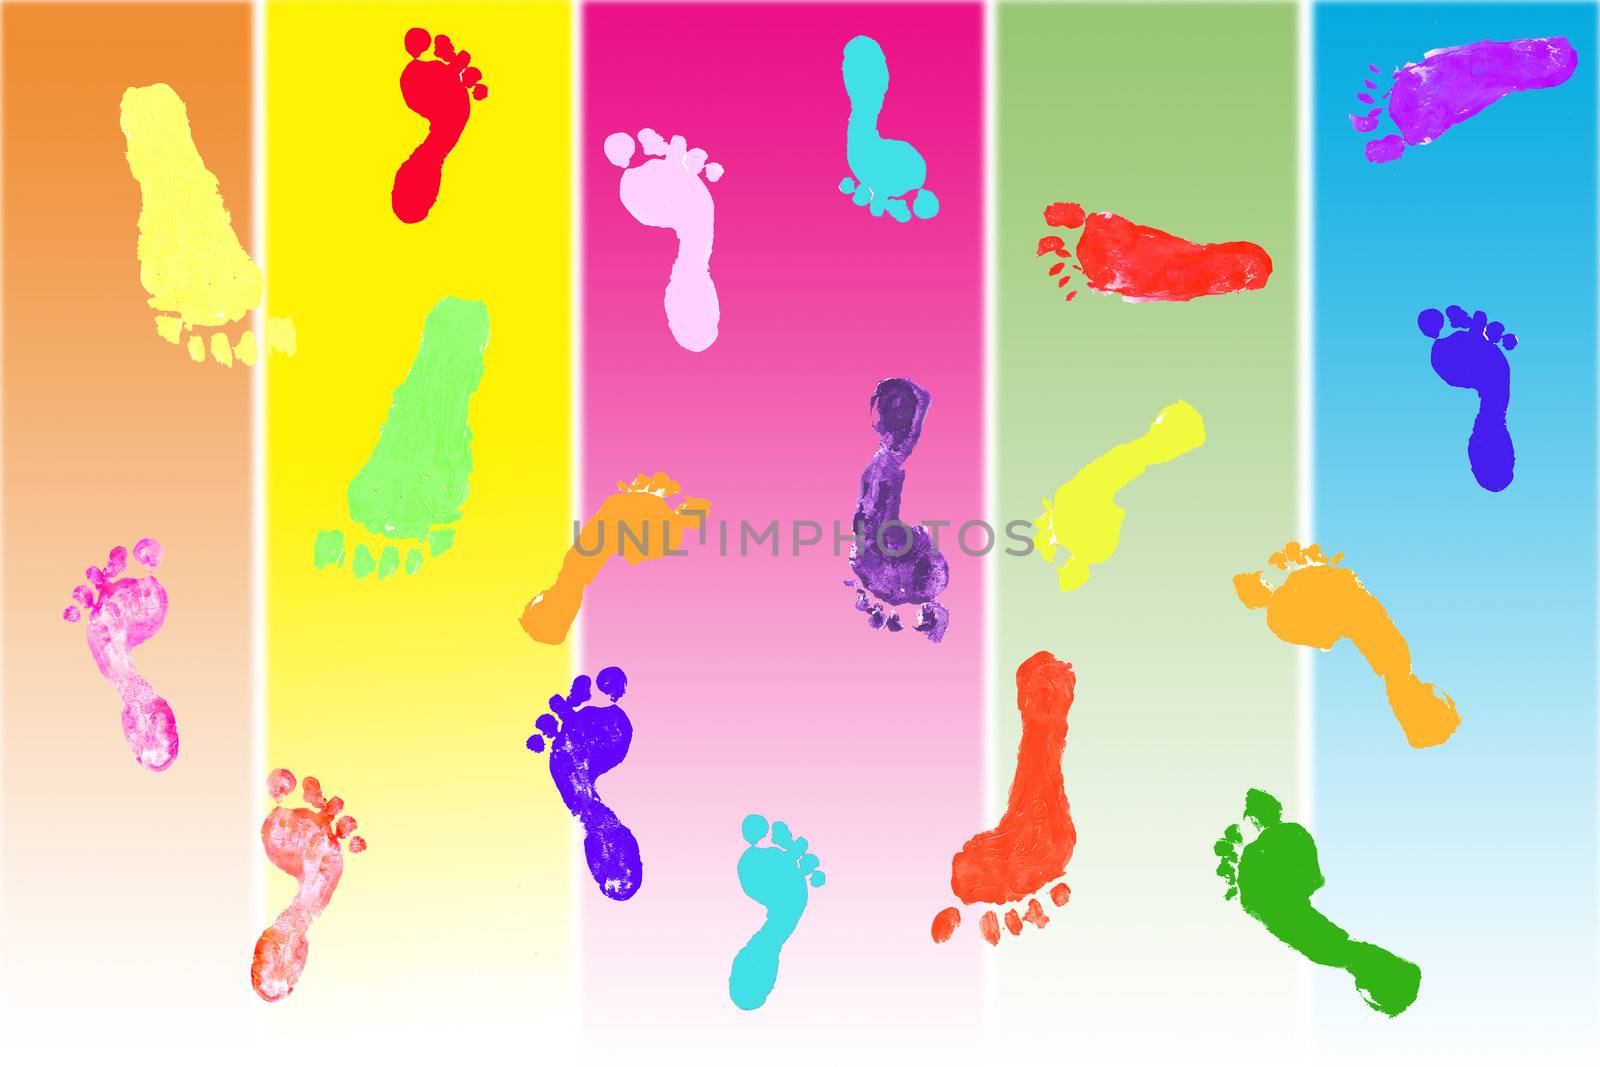 Actual footprints made by children by jarenwicklund